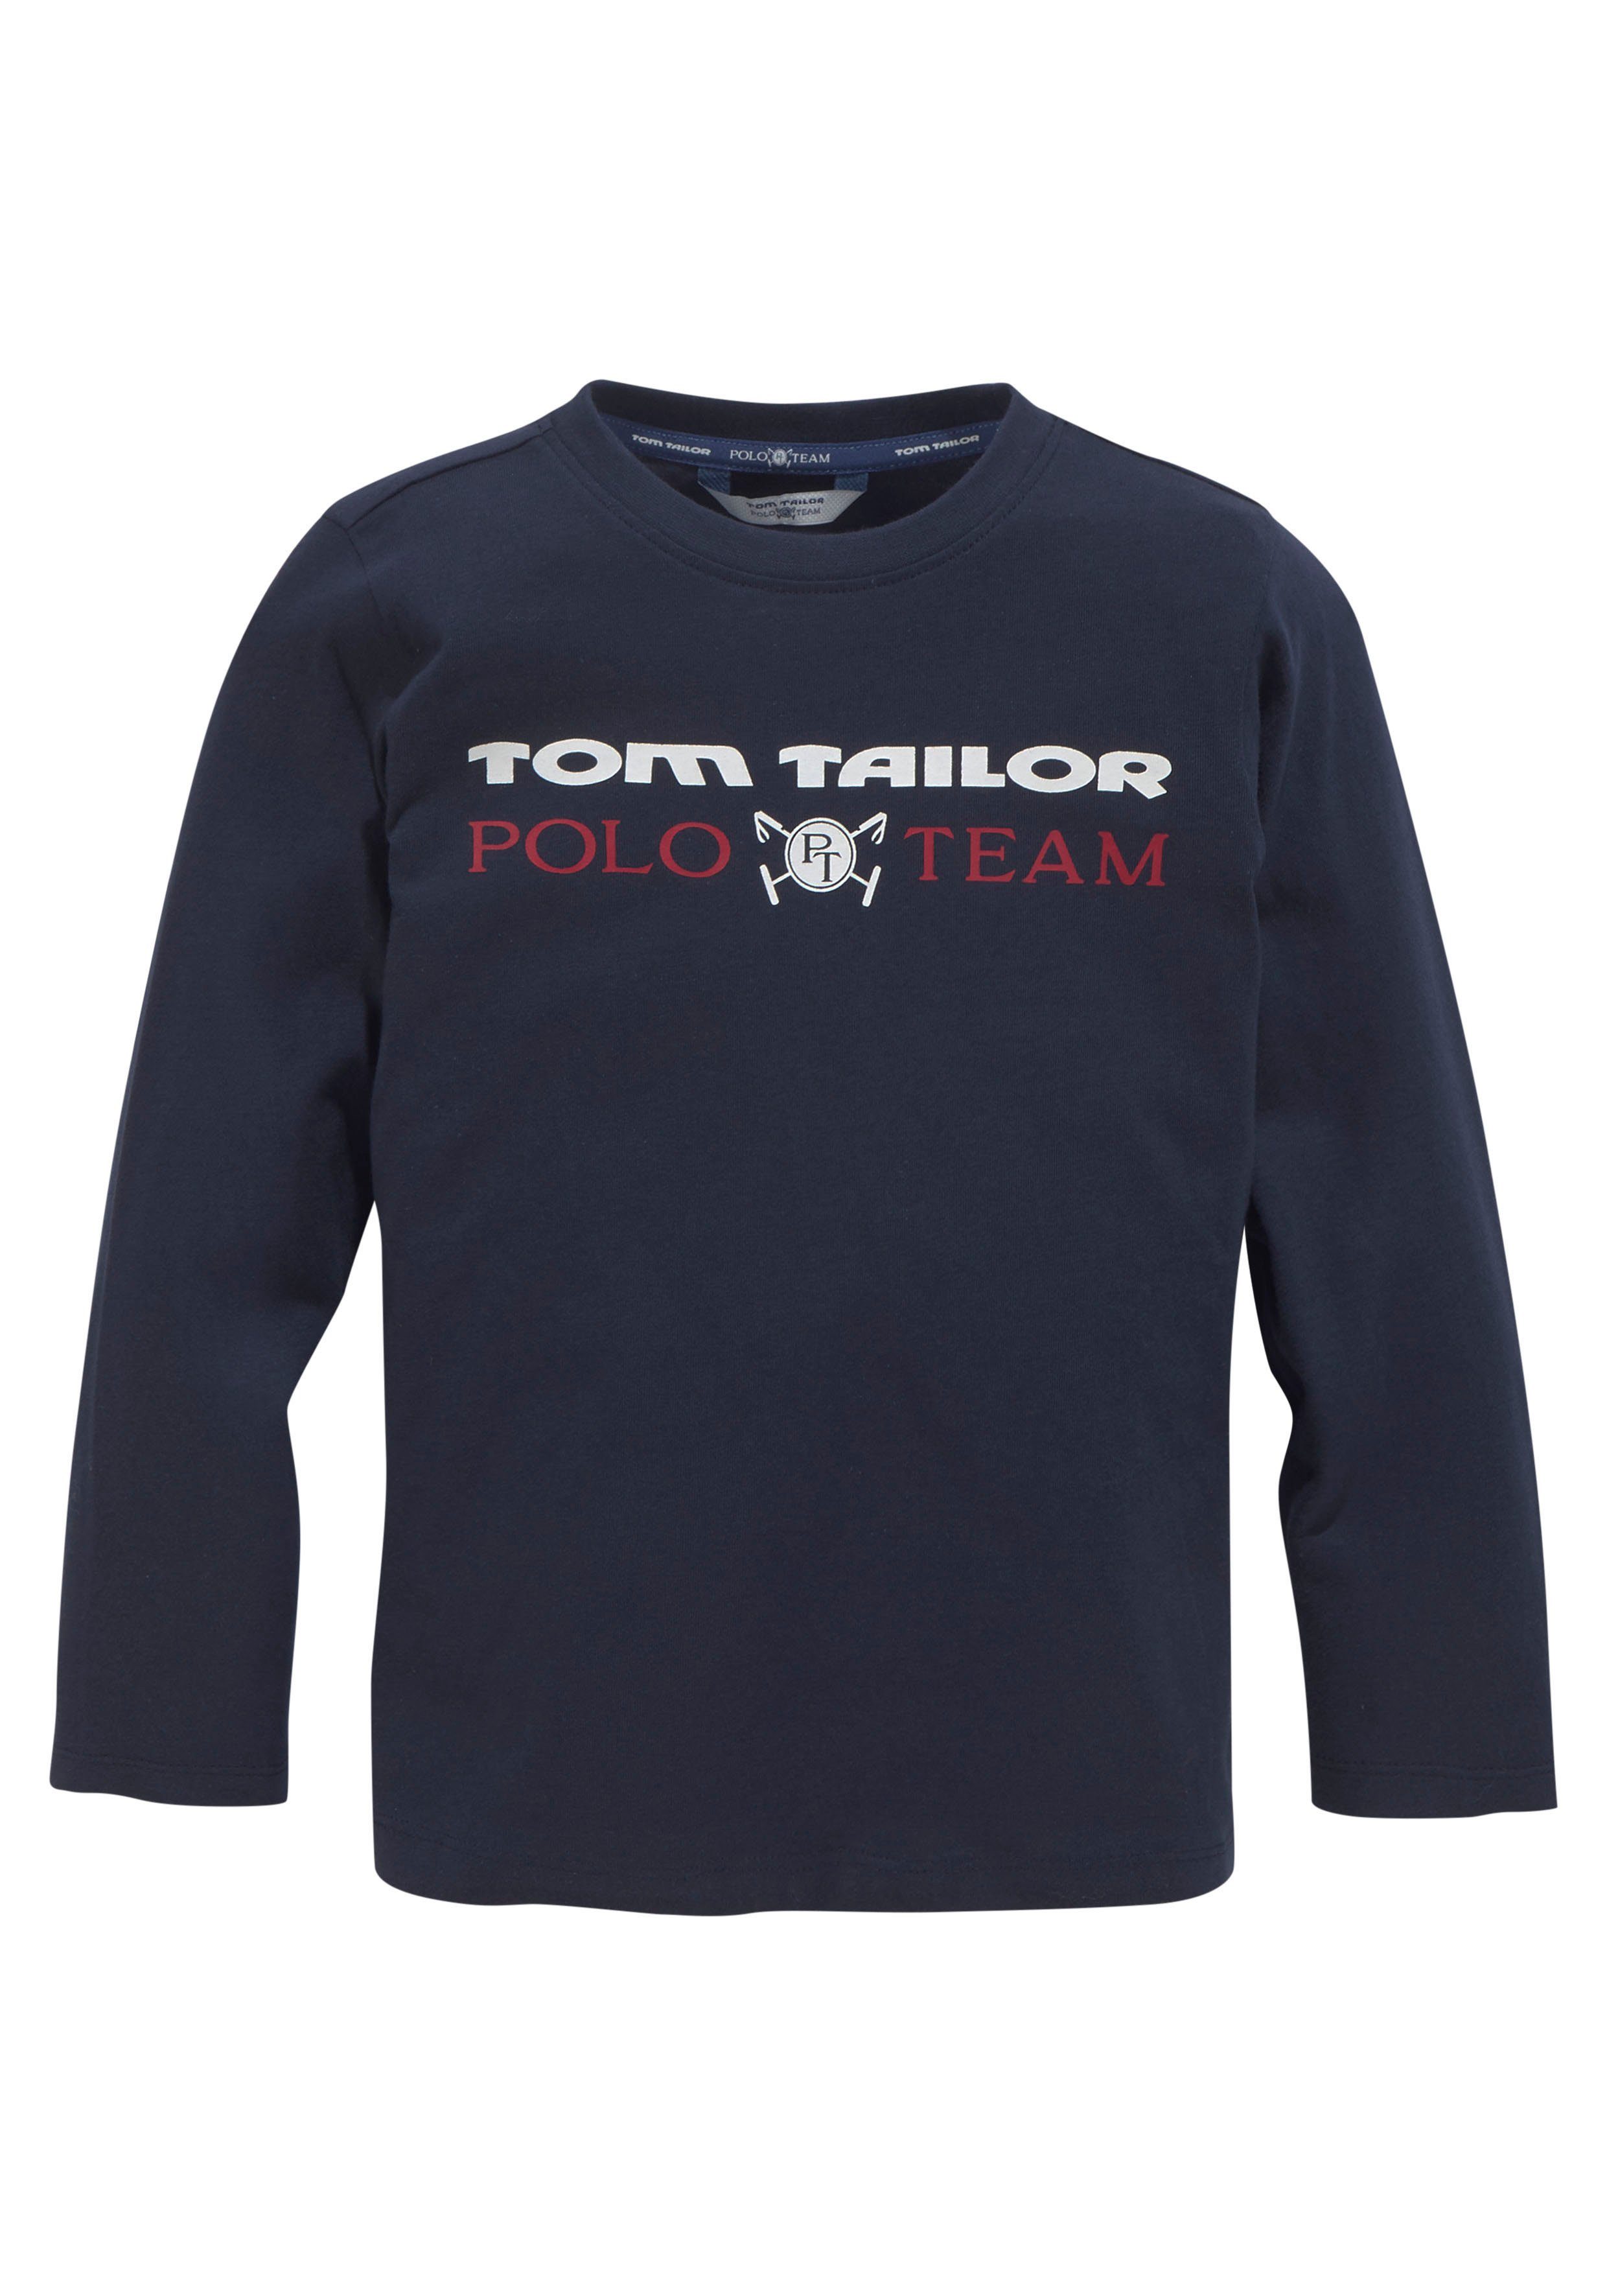 Kinder Kids (Gr. 92 - 146) TOM TAILOR Polo Team Langarmshirt